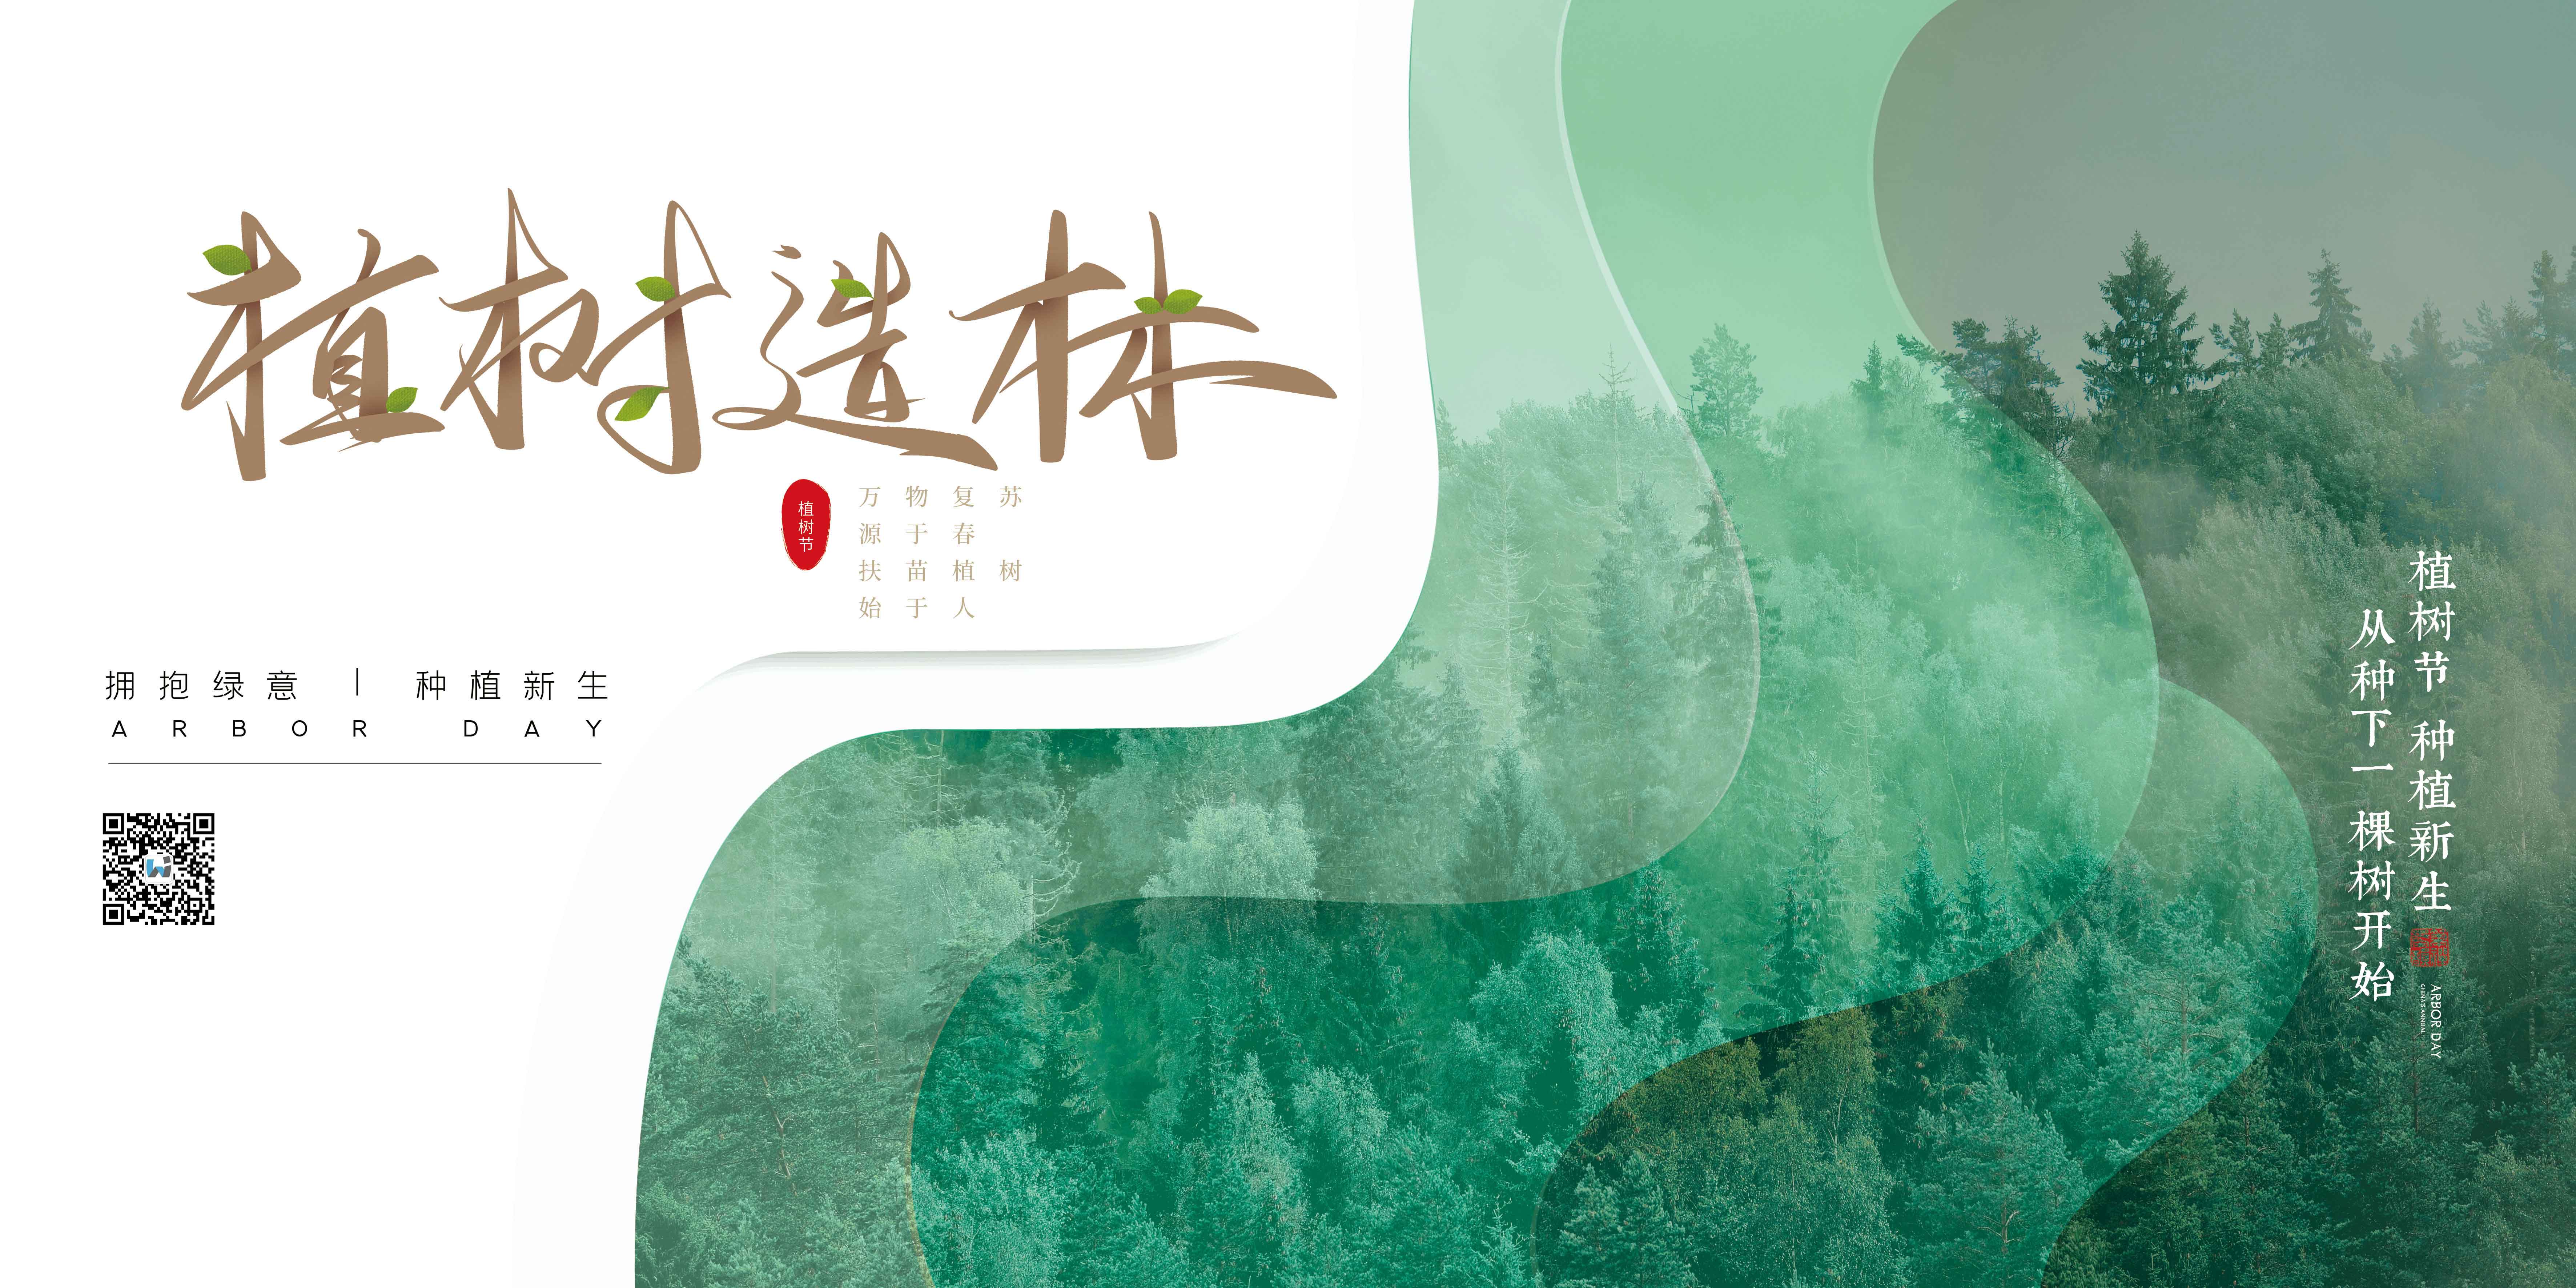 植一片绿色 守护绿水青山 —— 北京康茂峰开展志愿者植树活动